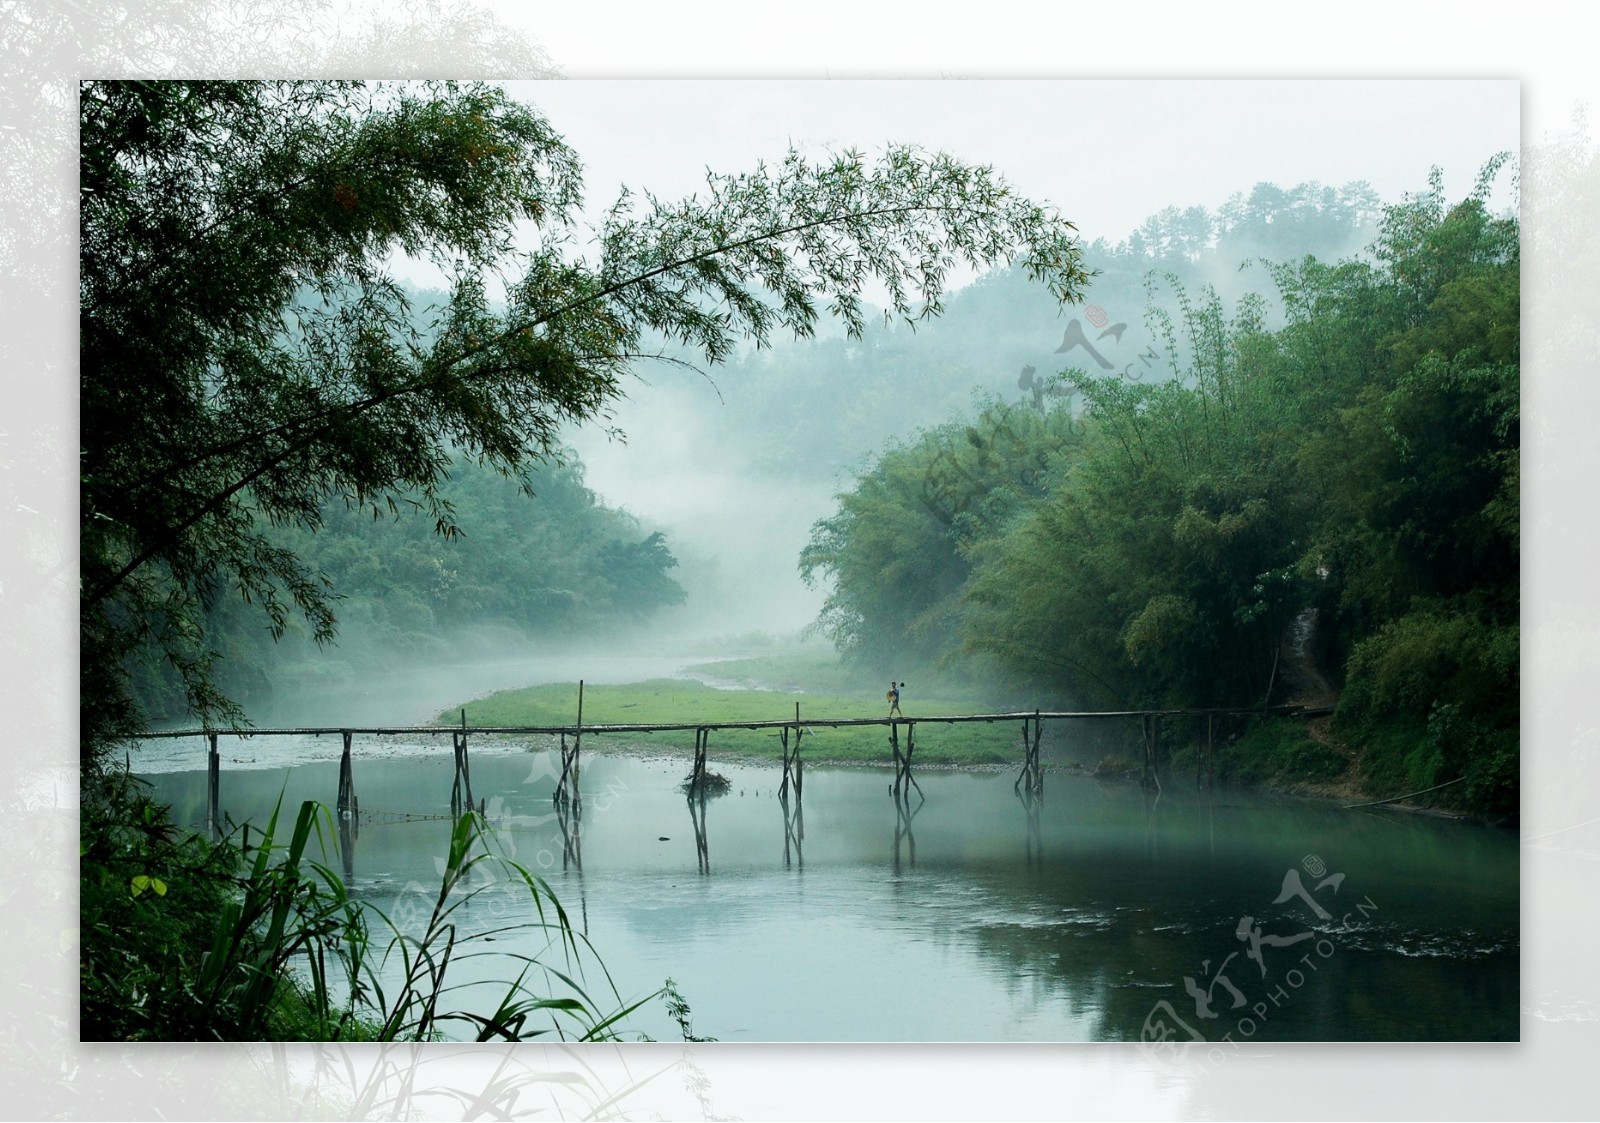 小桥流水竹海图片